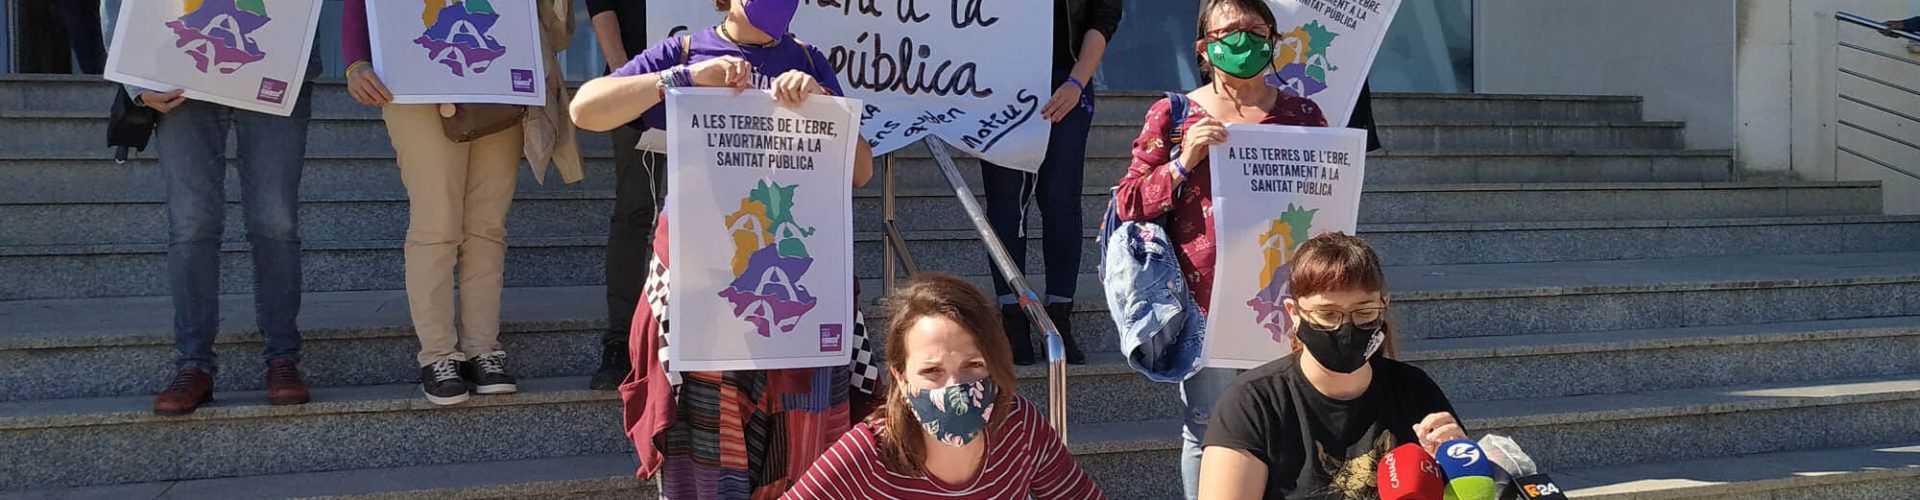 L’Assemblea Vaga Feminista de les Terres de l’Ebre denuncia barreres per exercir el dret a l’avortament